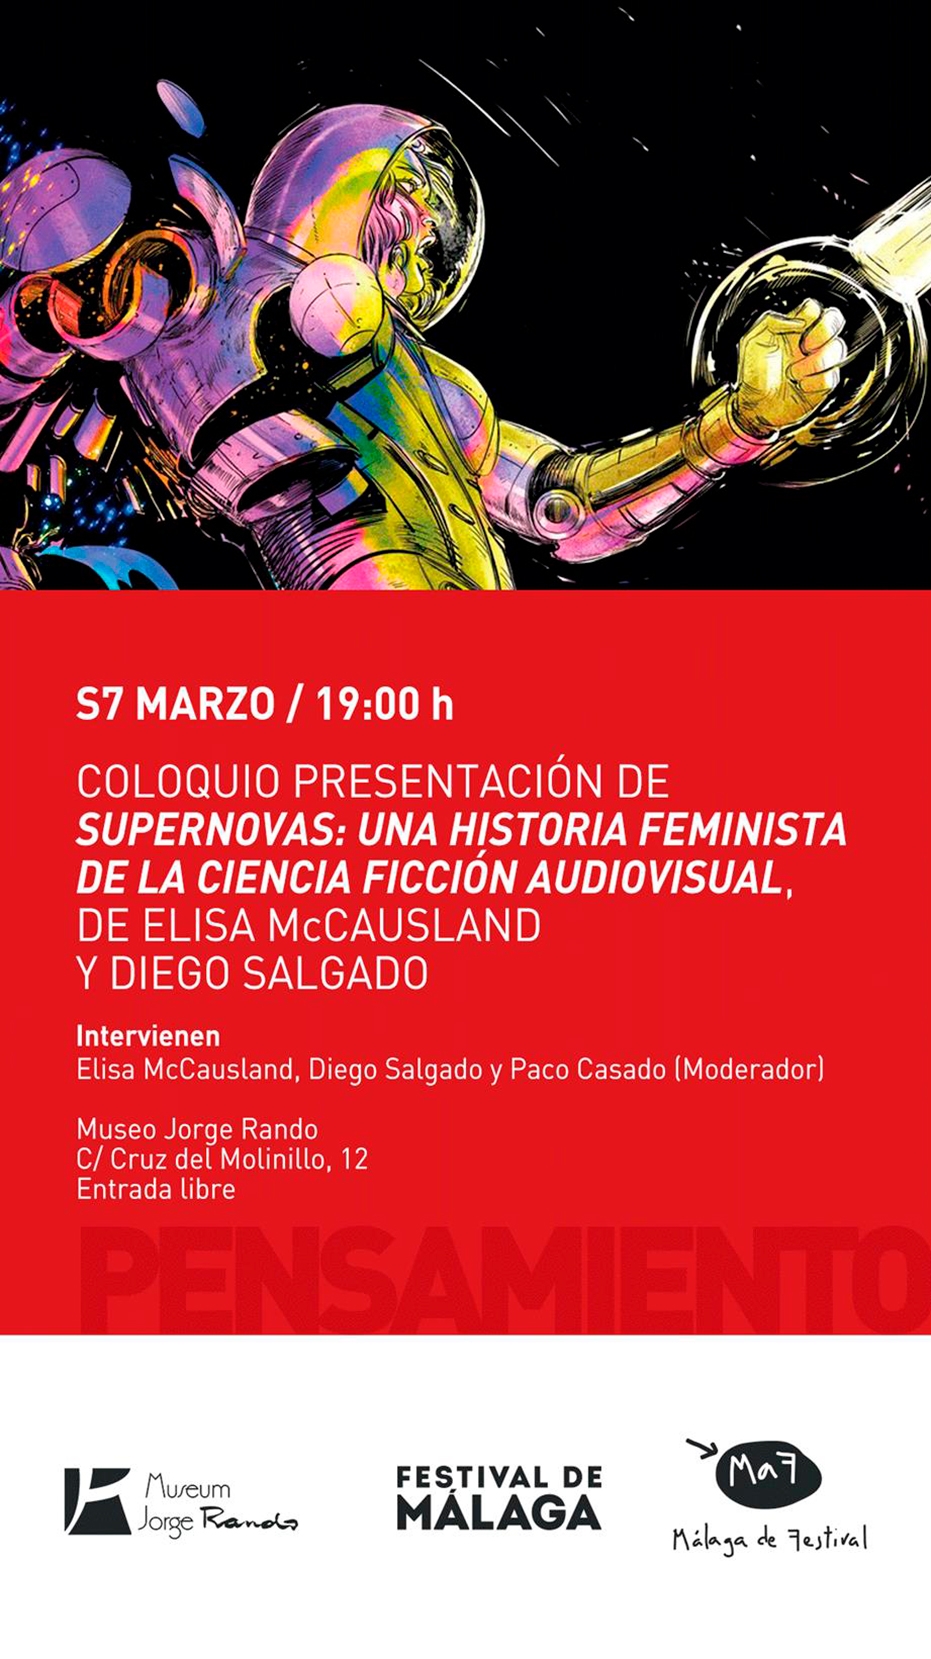 Coloquio presentación de 'Supernovas: una historia feminista de la ciencia ficción audiovisual', de Elisa McCausland y Diego Salgado